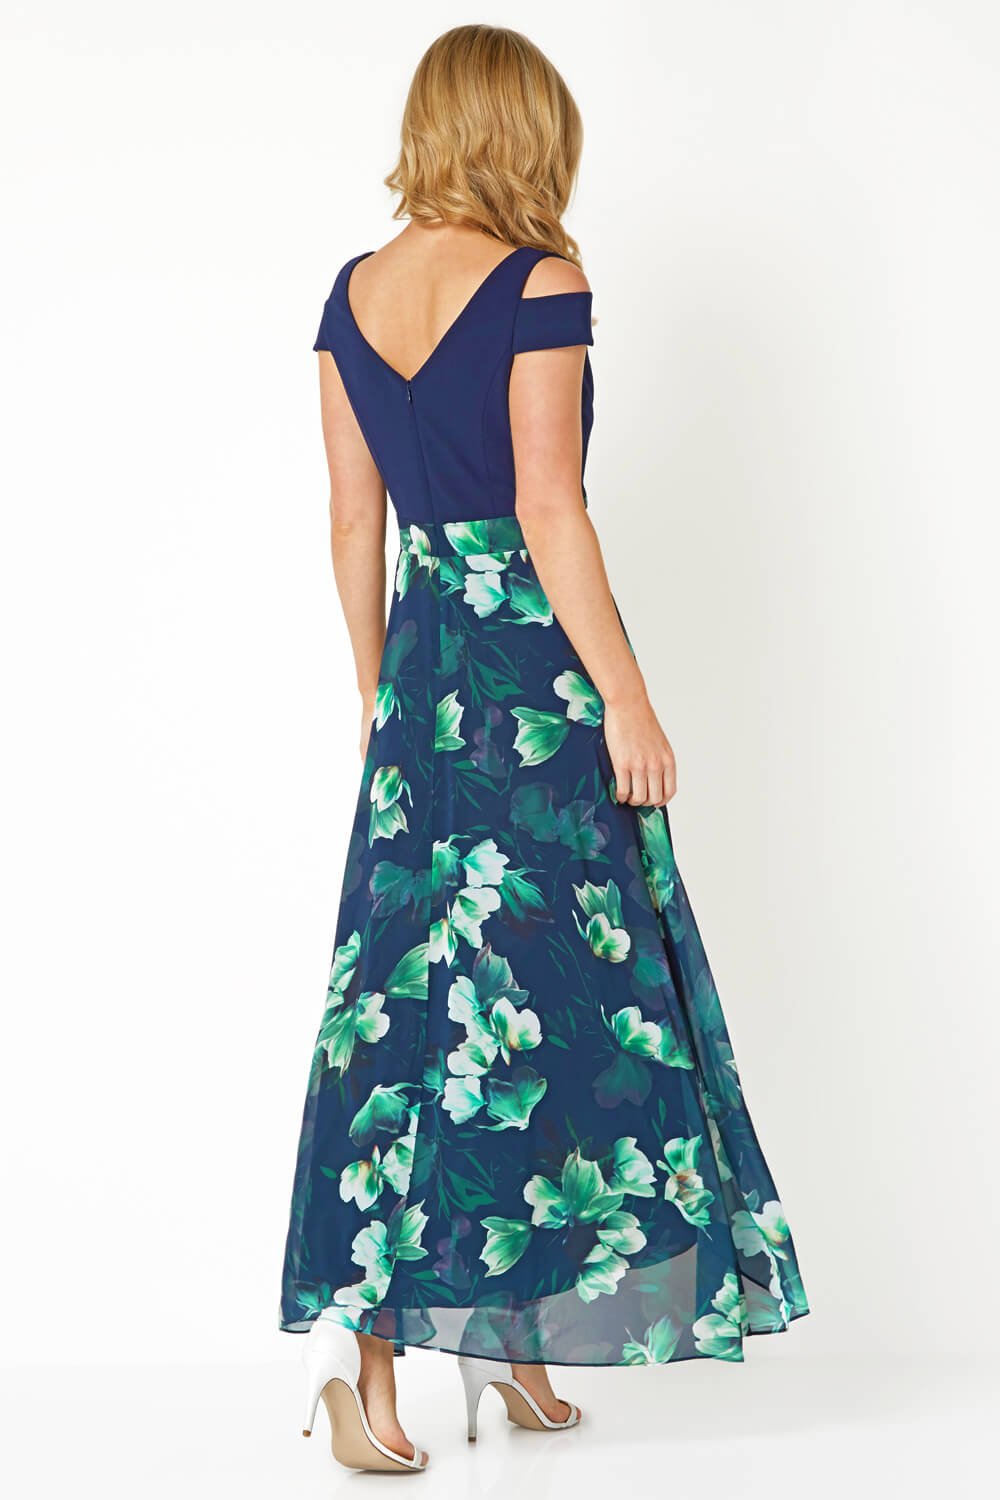 Floral Print Cold Shoulder Maxi Dress in NAVY - Roman Originals UK